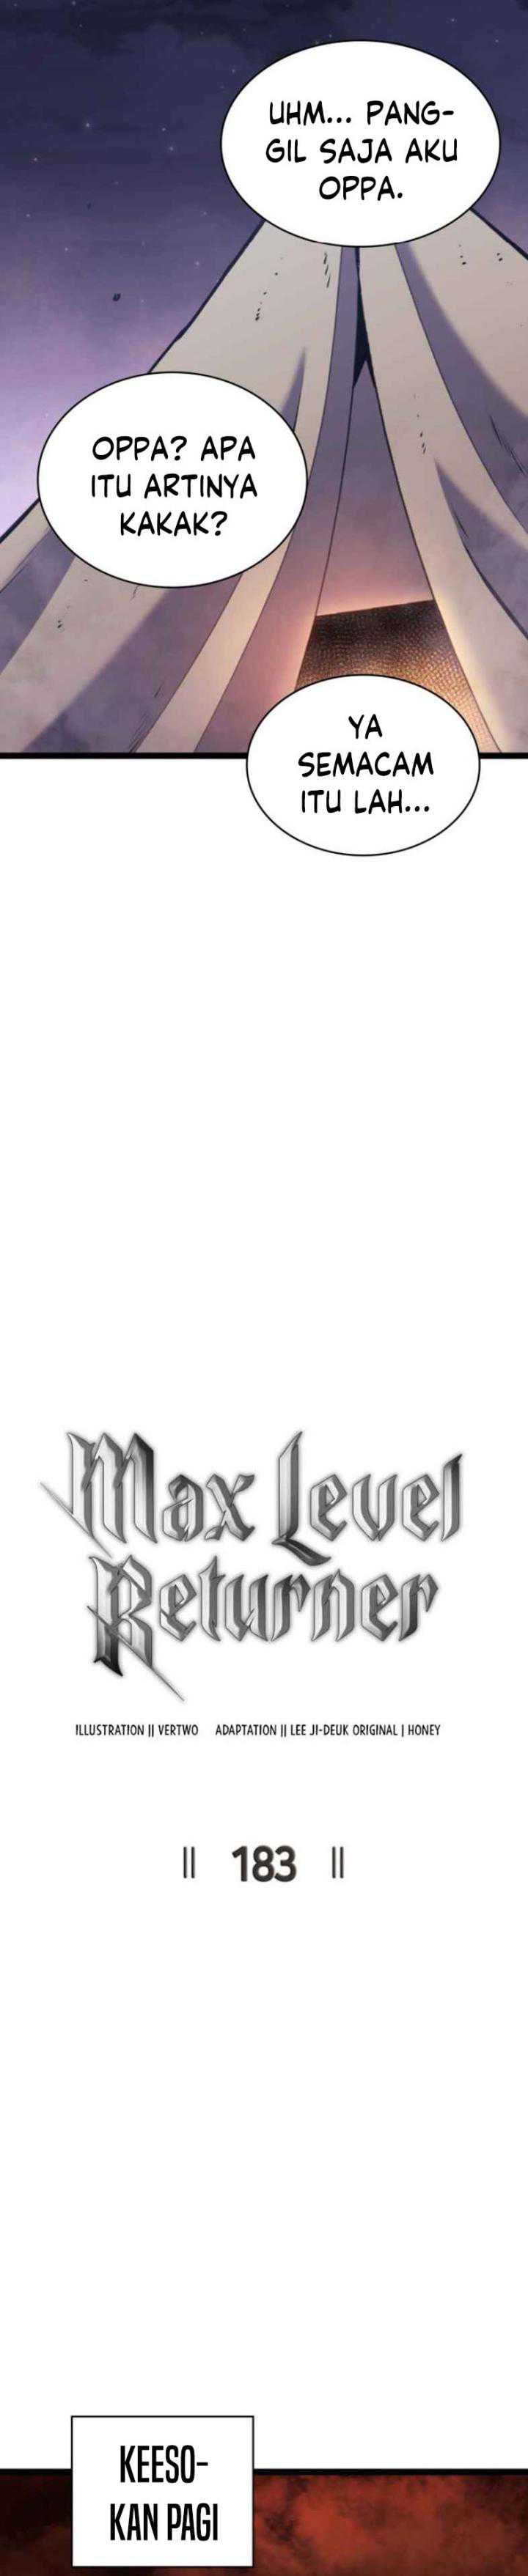 Highest Level Returnee (Max Level Returner) Chapter 183